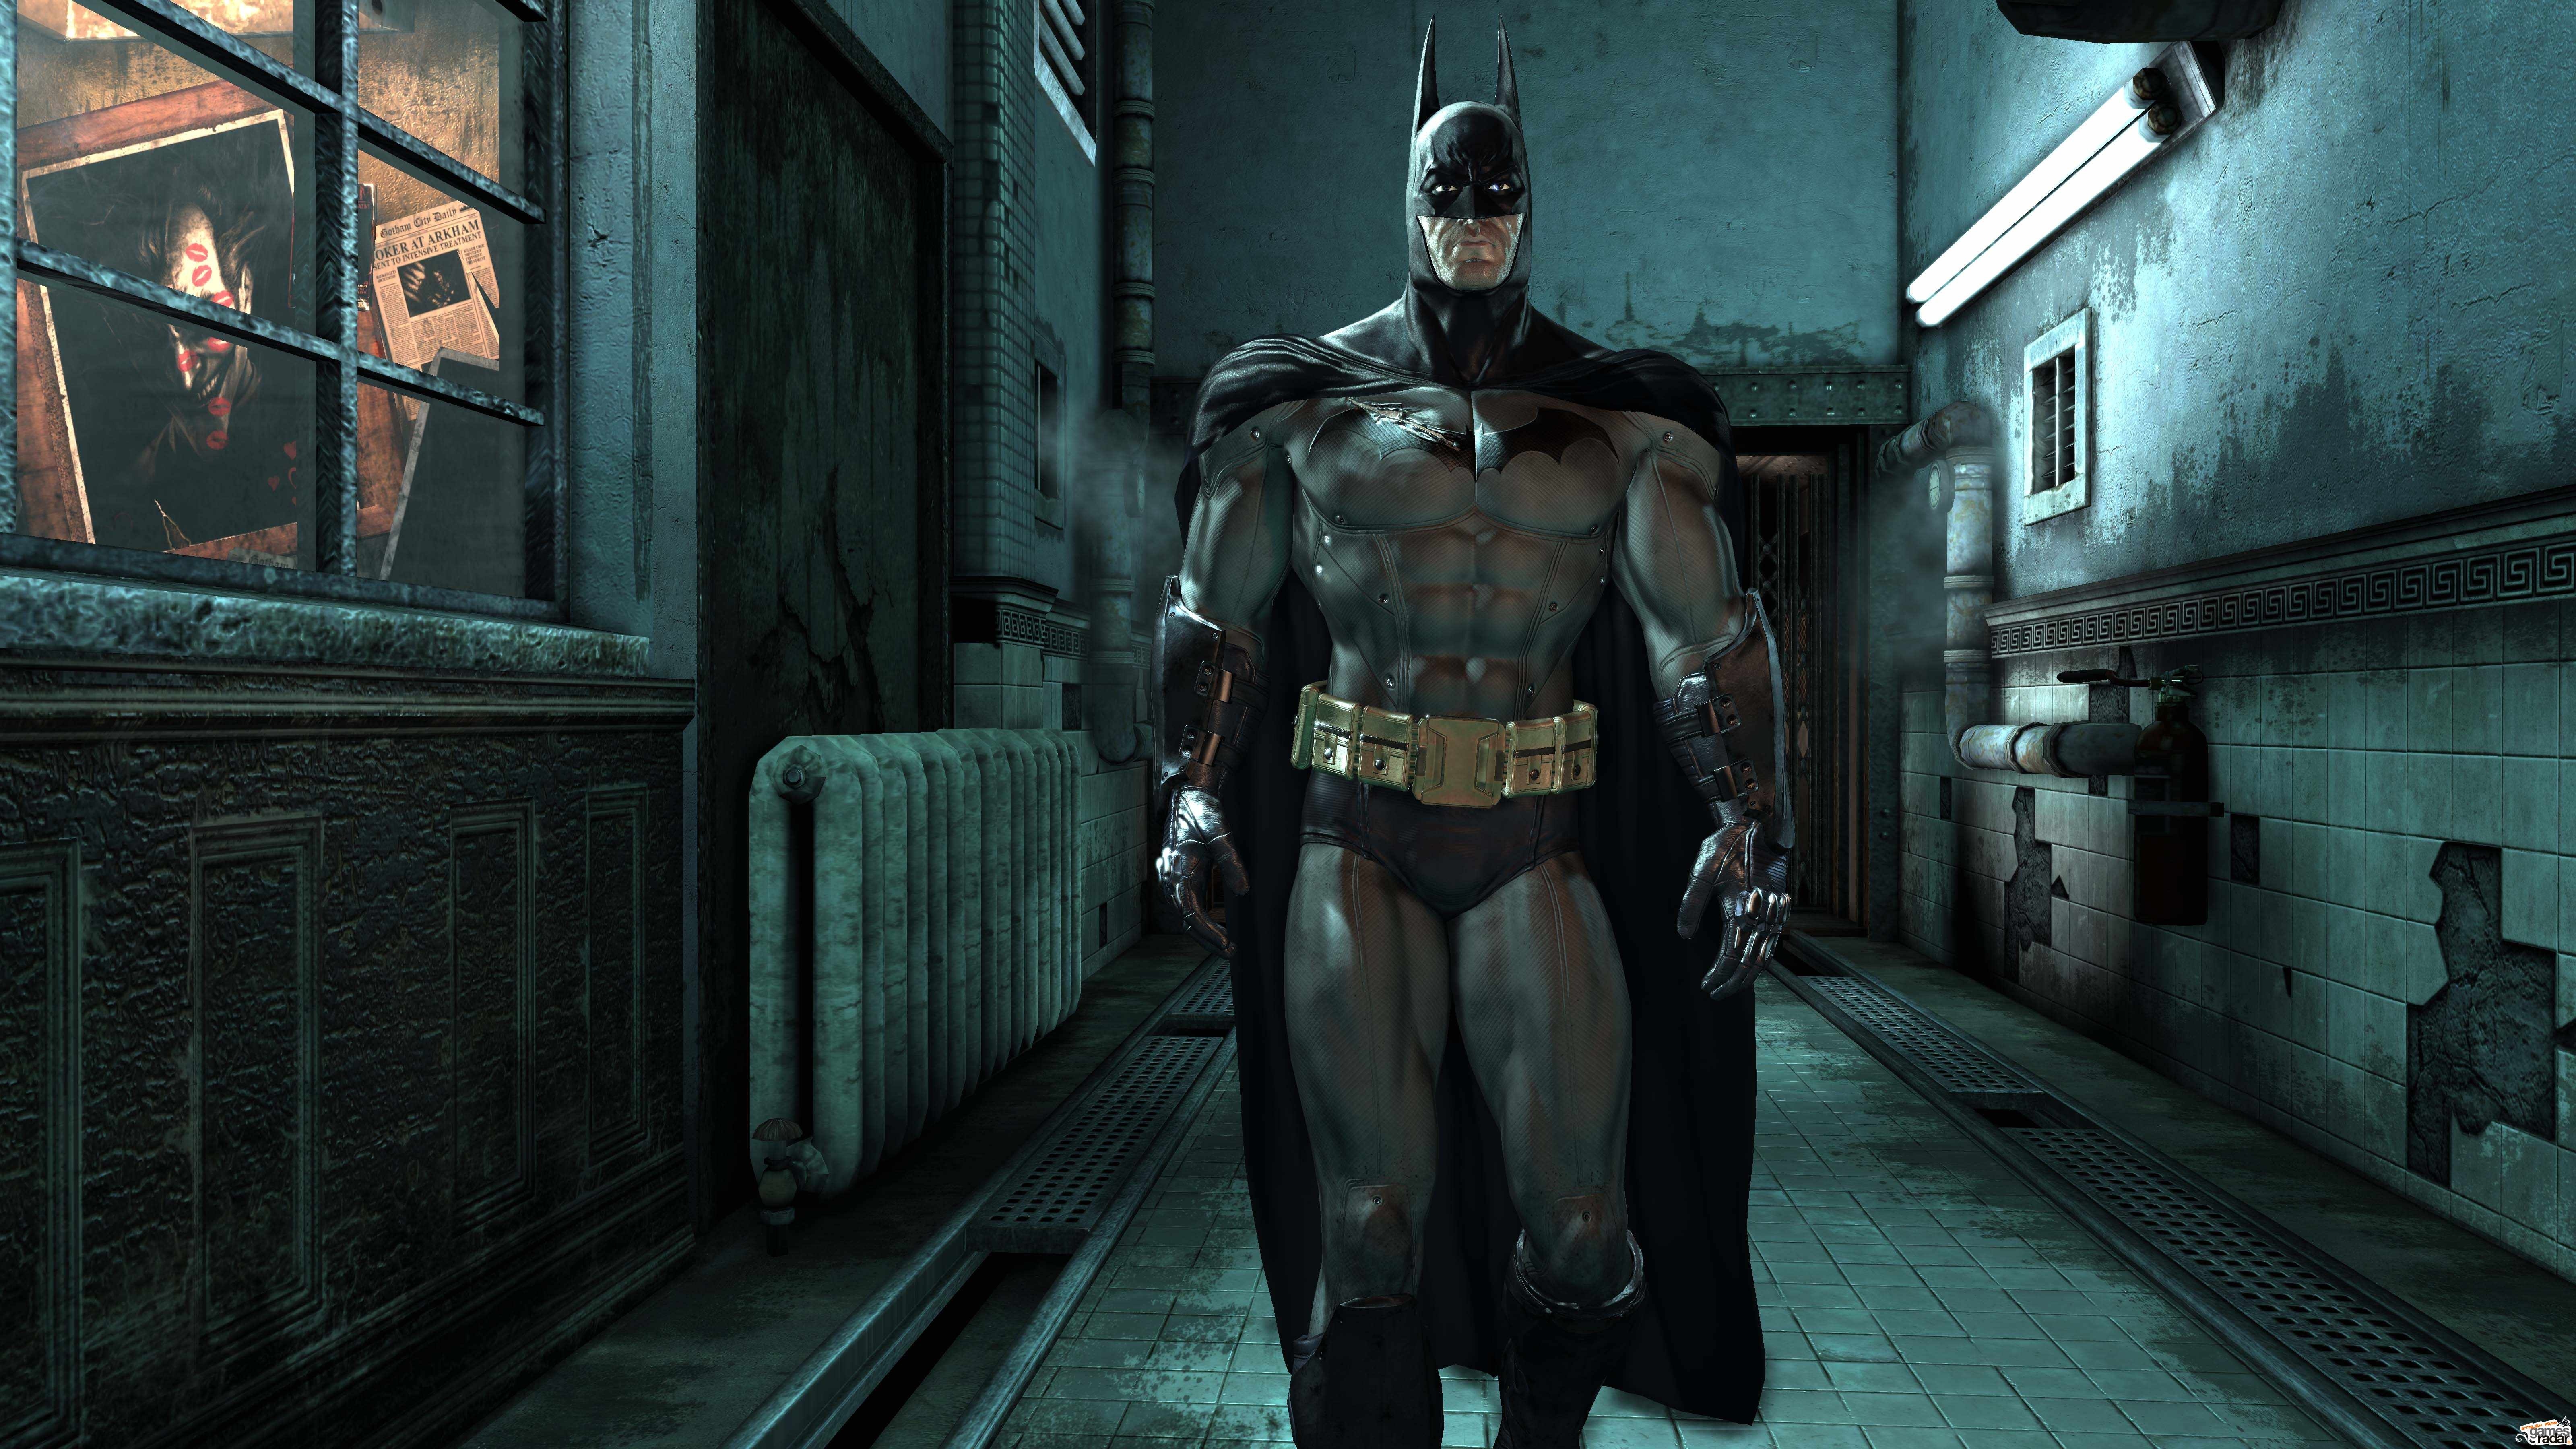 Бэтмен аркхам асайлум. Batman: Arkham Asylum. Batman Аркхем асилум. Бэтмен Аркхем 2009. Бэтмен 2009 Arkham Asylum.